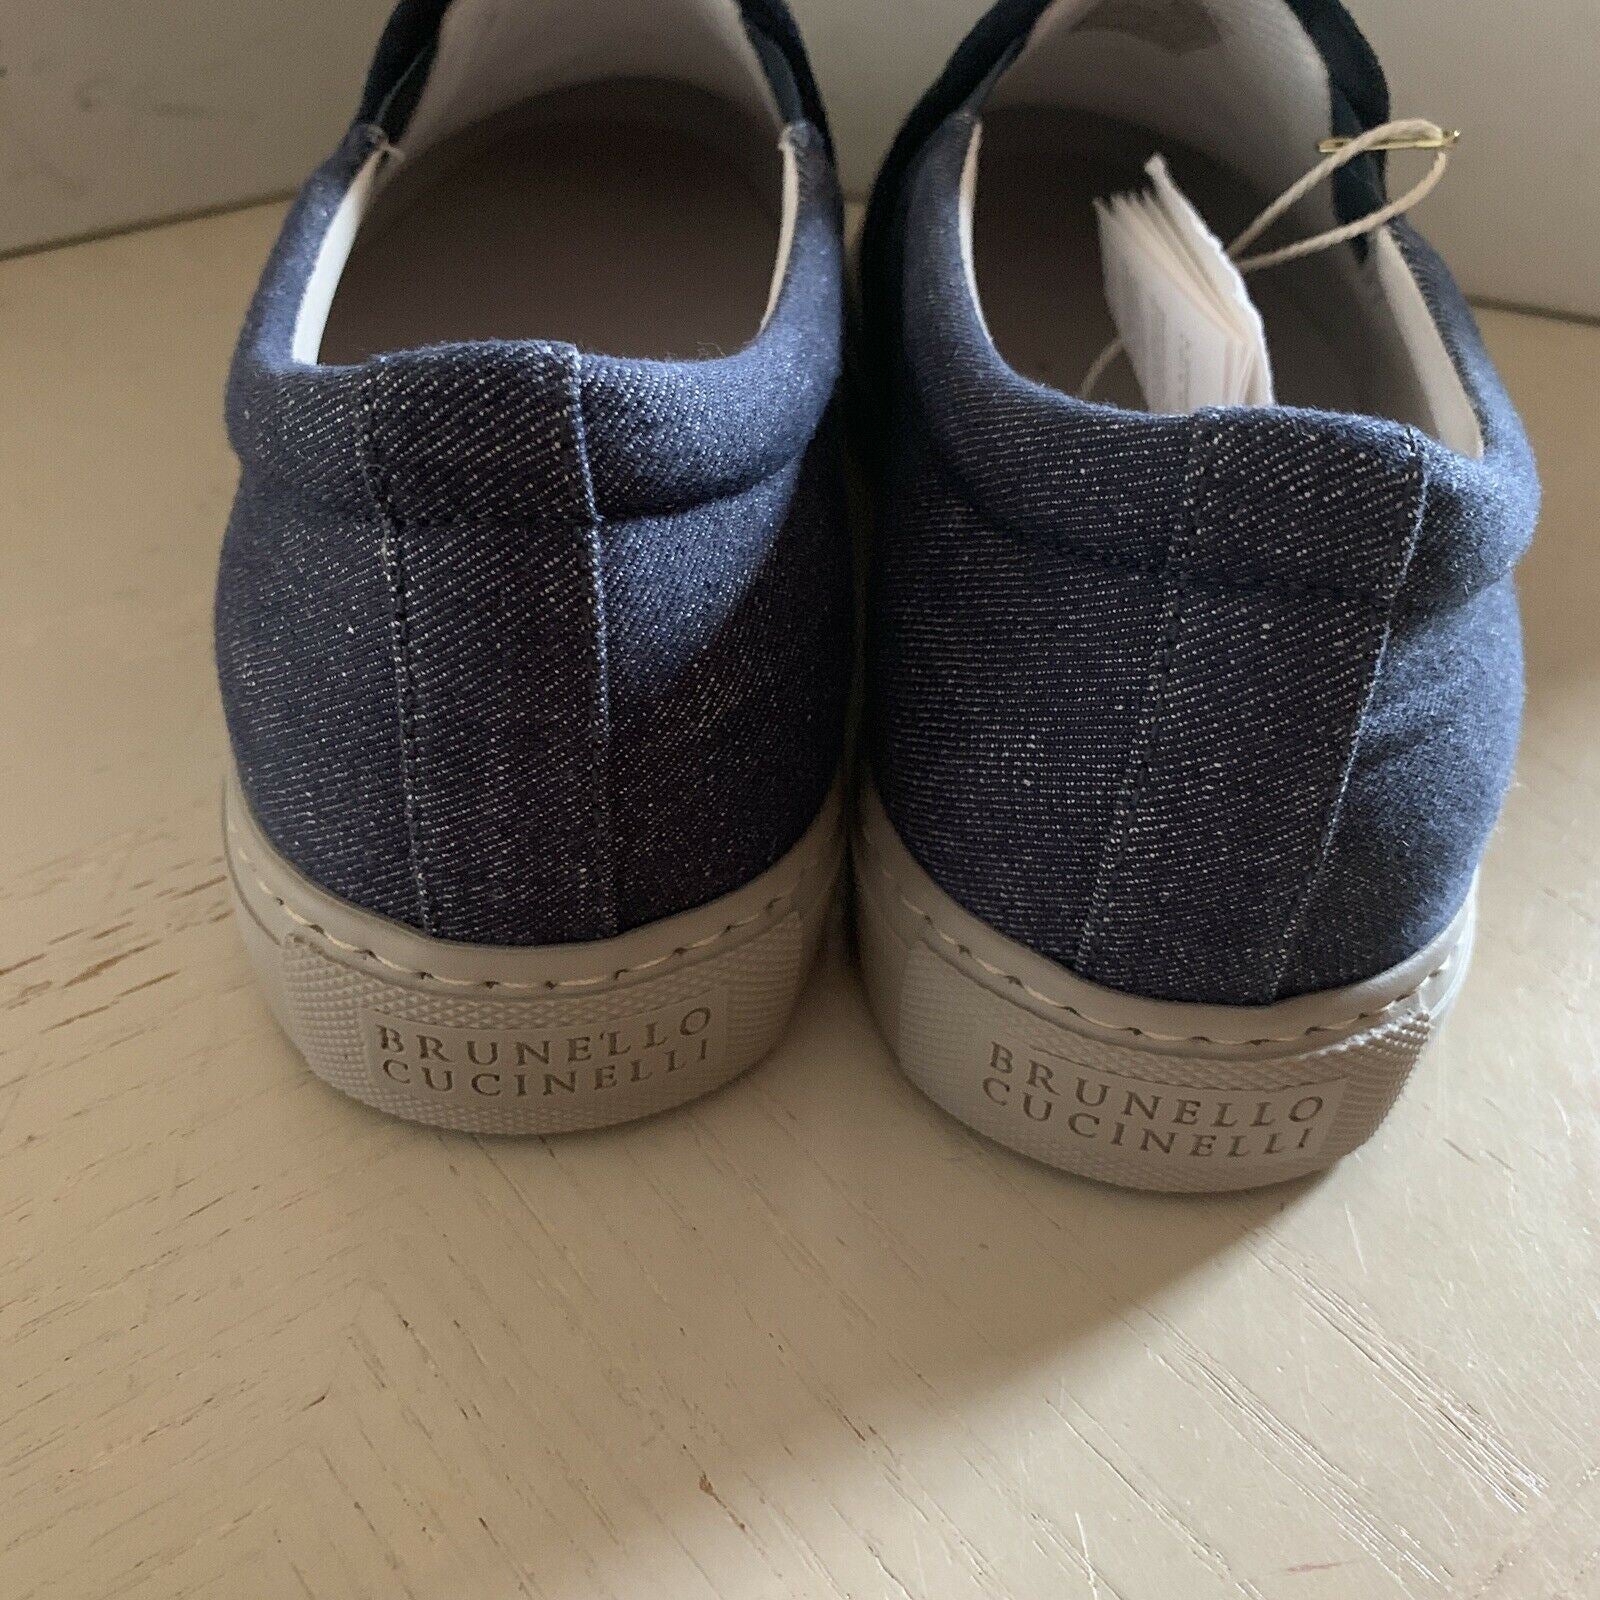 Neu $754 Brunello Cucinelli Herren Sneakers/Loafer Schuhe Farbe Blau 9 US / 42 Eu